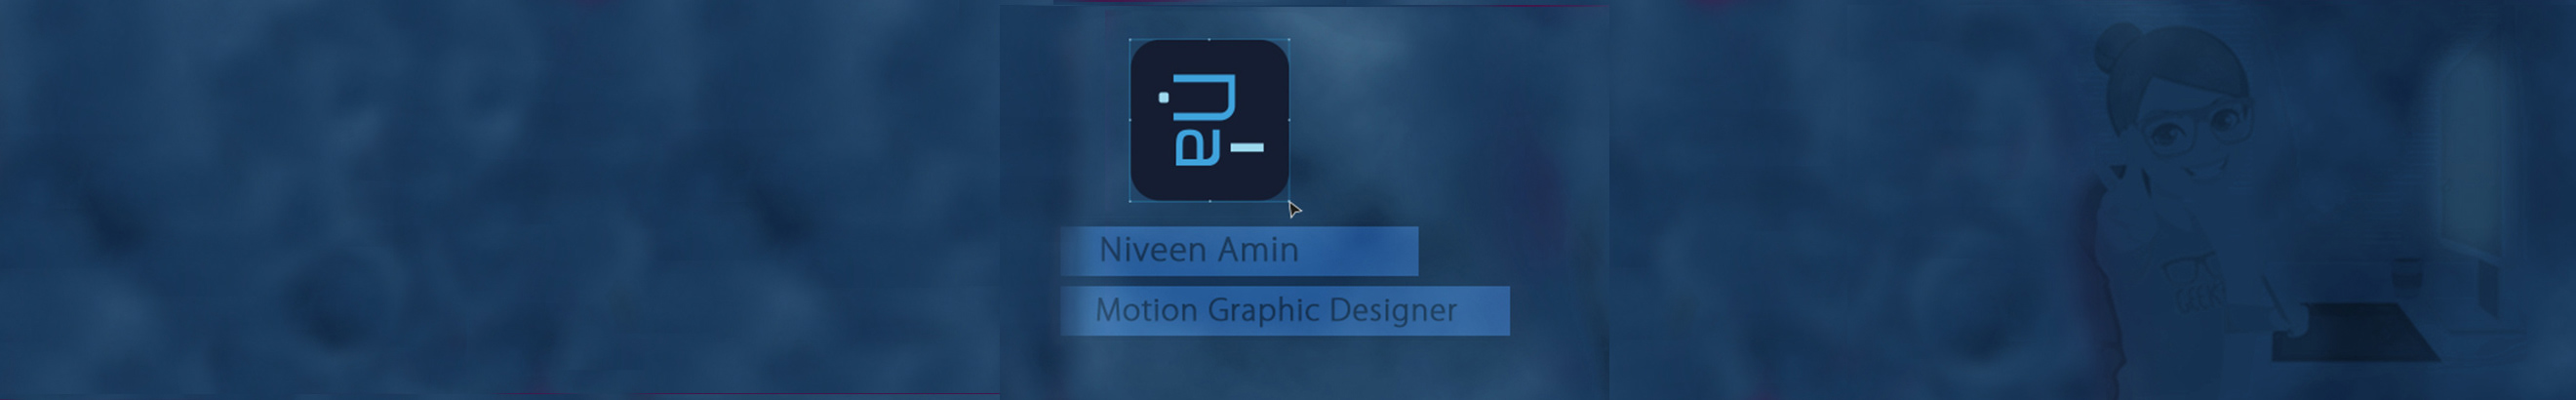 Niveen Amin profil başlığı